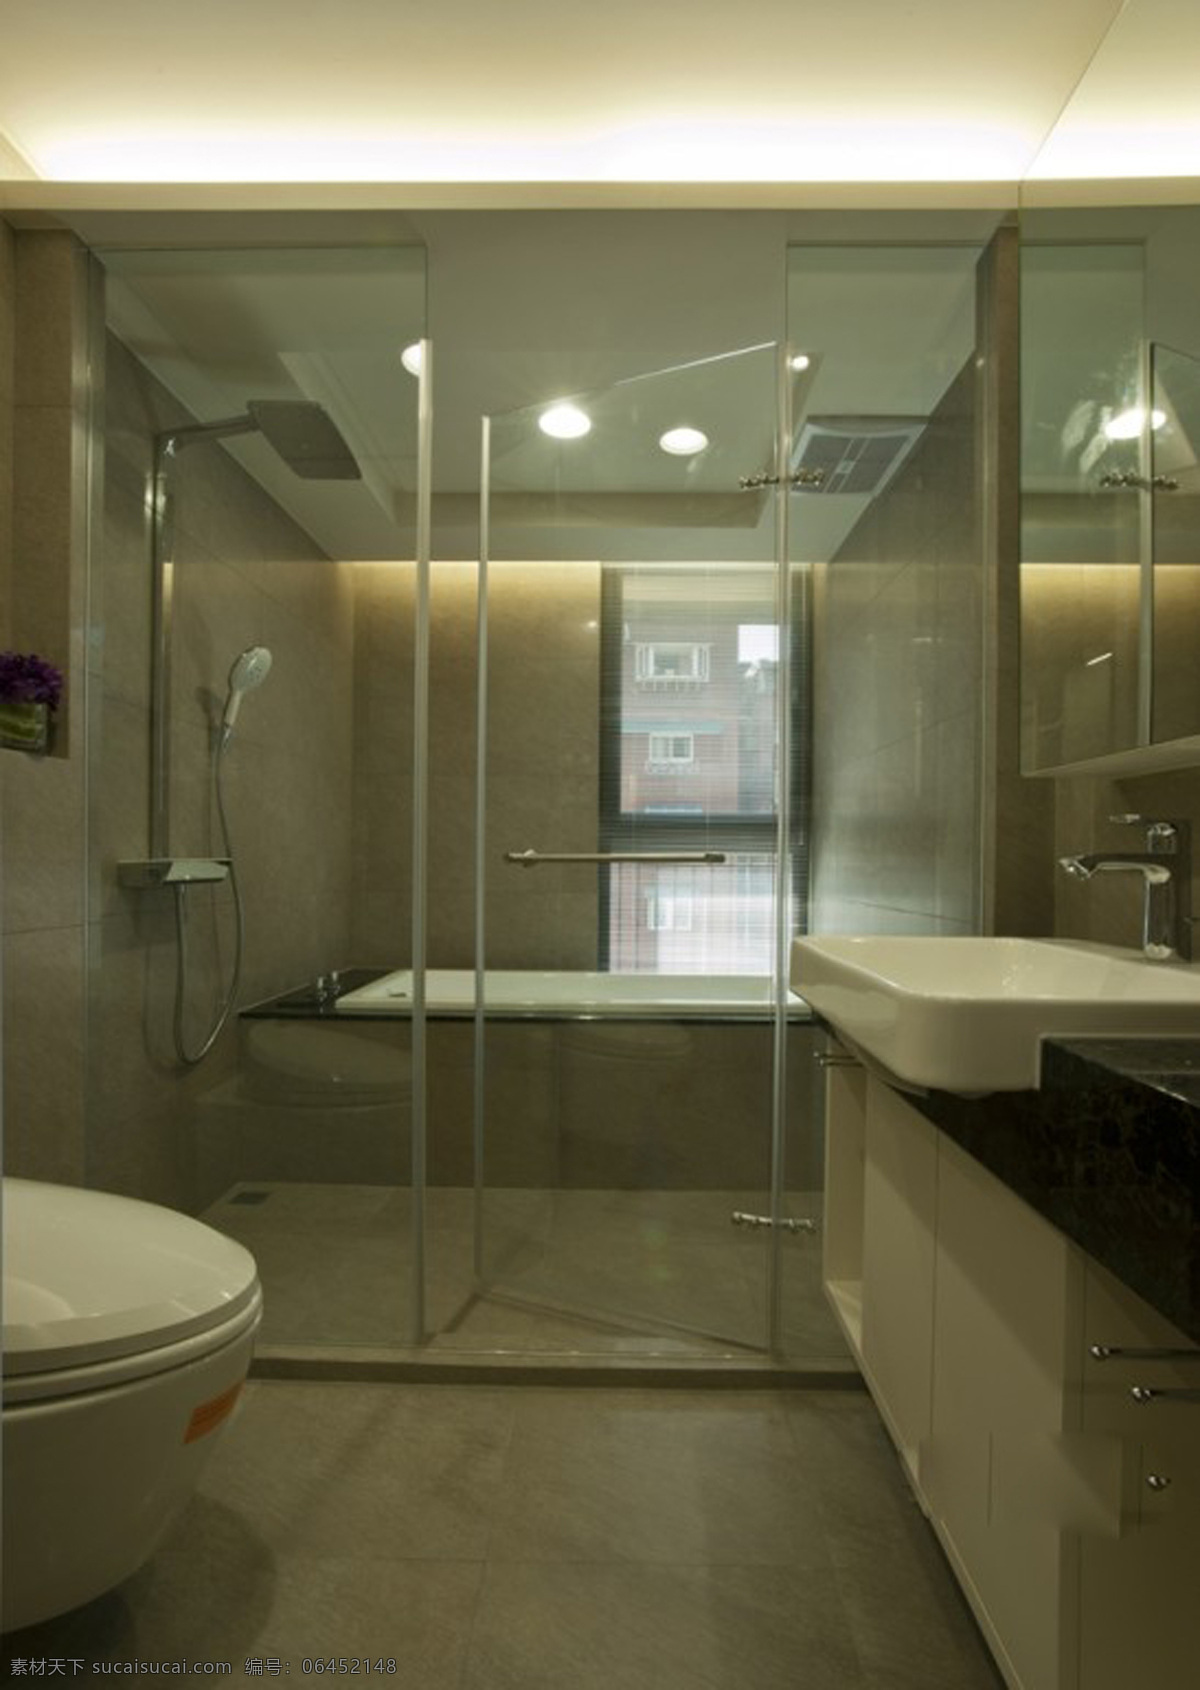 浴室 抱枕 布艺 大厅 地毯 豪华 欧式室内设计 室内装饰 台灯 浴室效果图 装饰素材